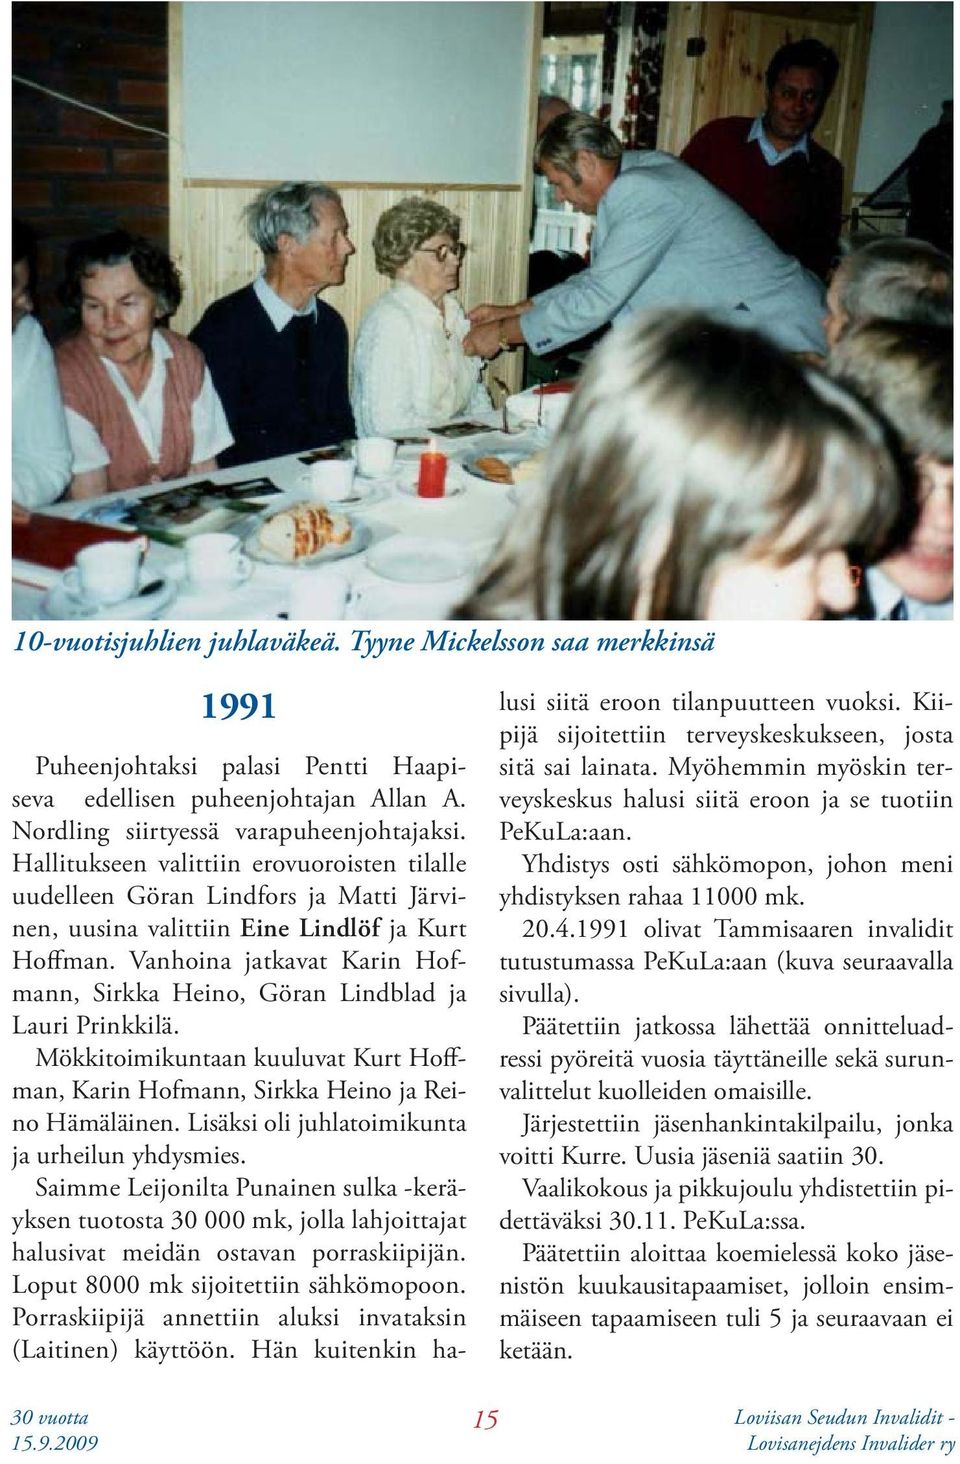 Vanhoina jatkavat Karin Hofmann, Sirkka Heino, Göran Lindblad ja Lauri Prinkkilä. Mökkitoimikuntaan kuuluvat Kurt Hoffman, Karin Hofmann, Sirkka Heino ja Reino Hämäläinen.